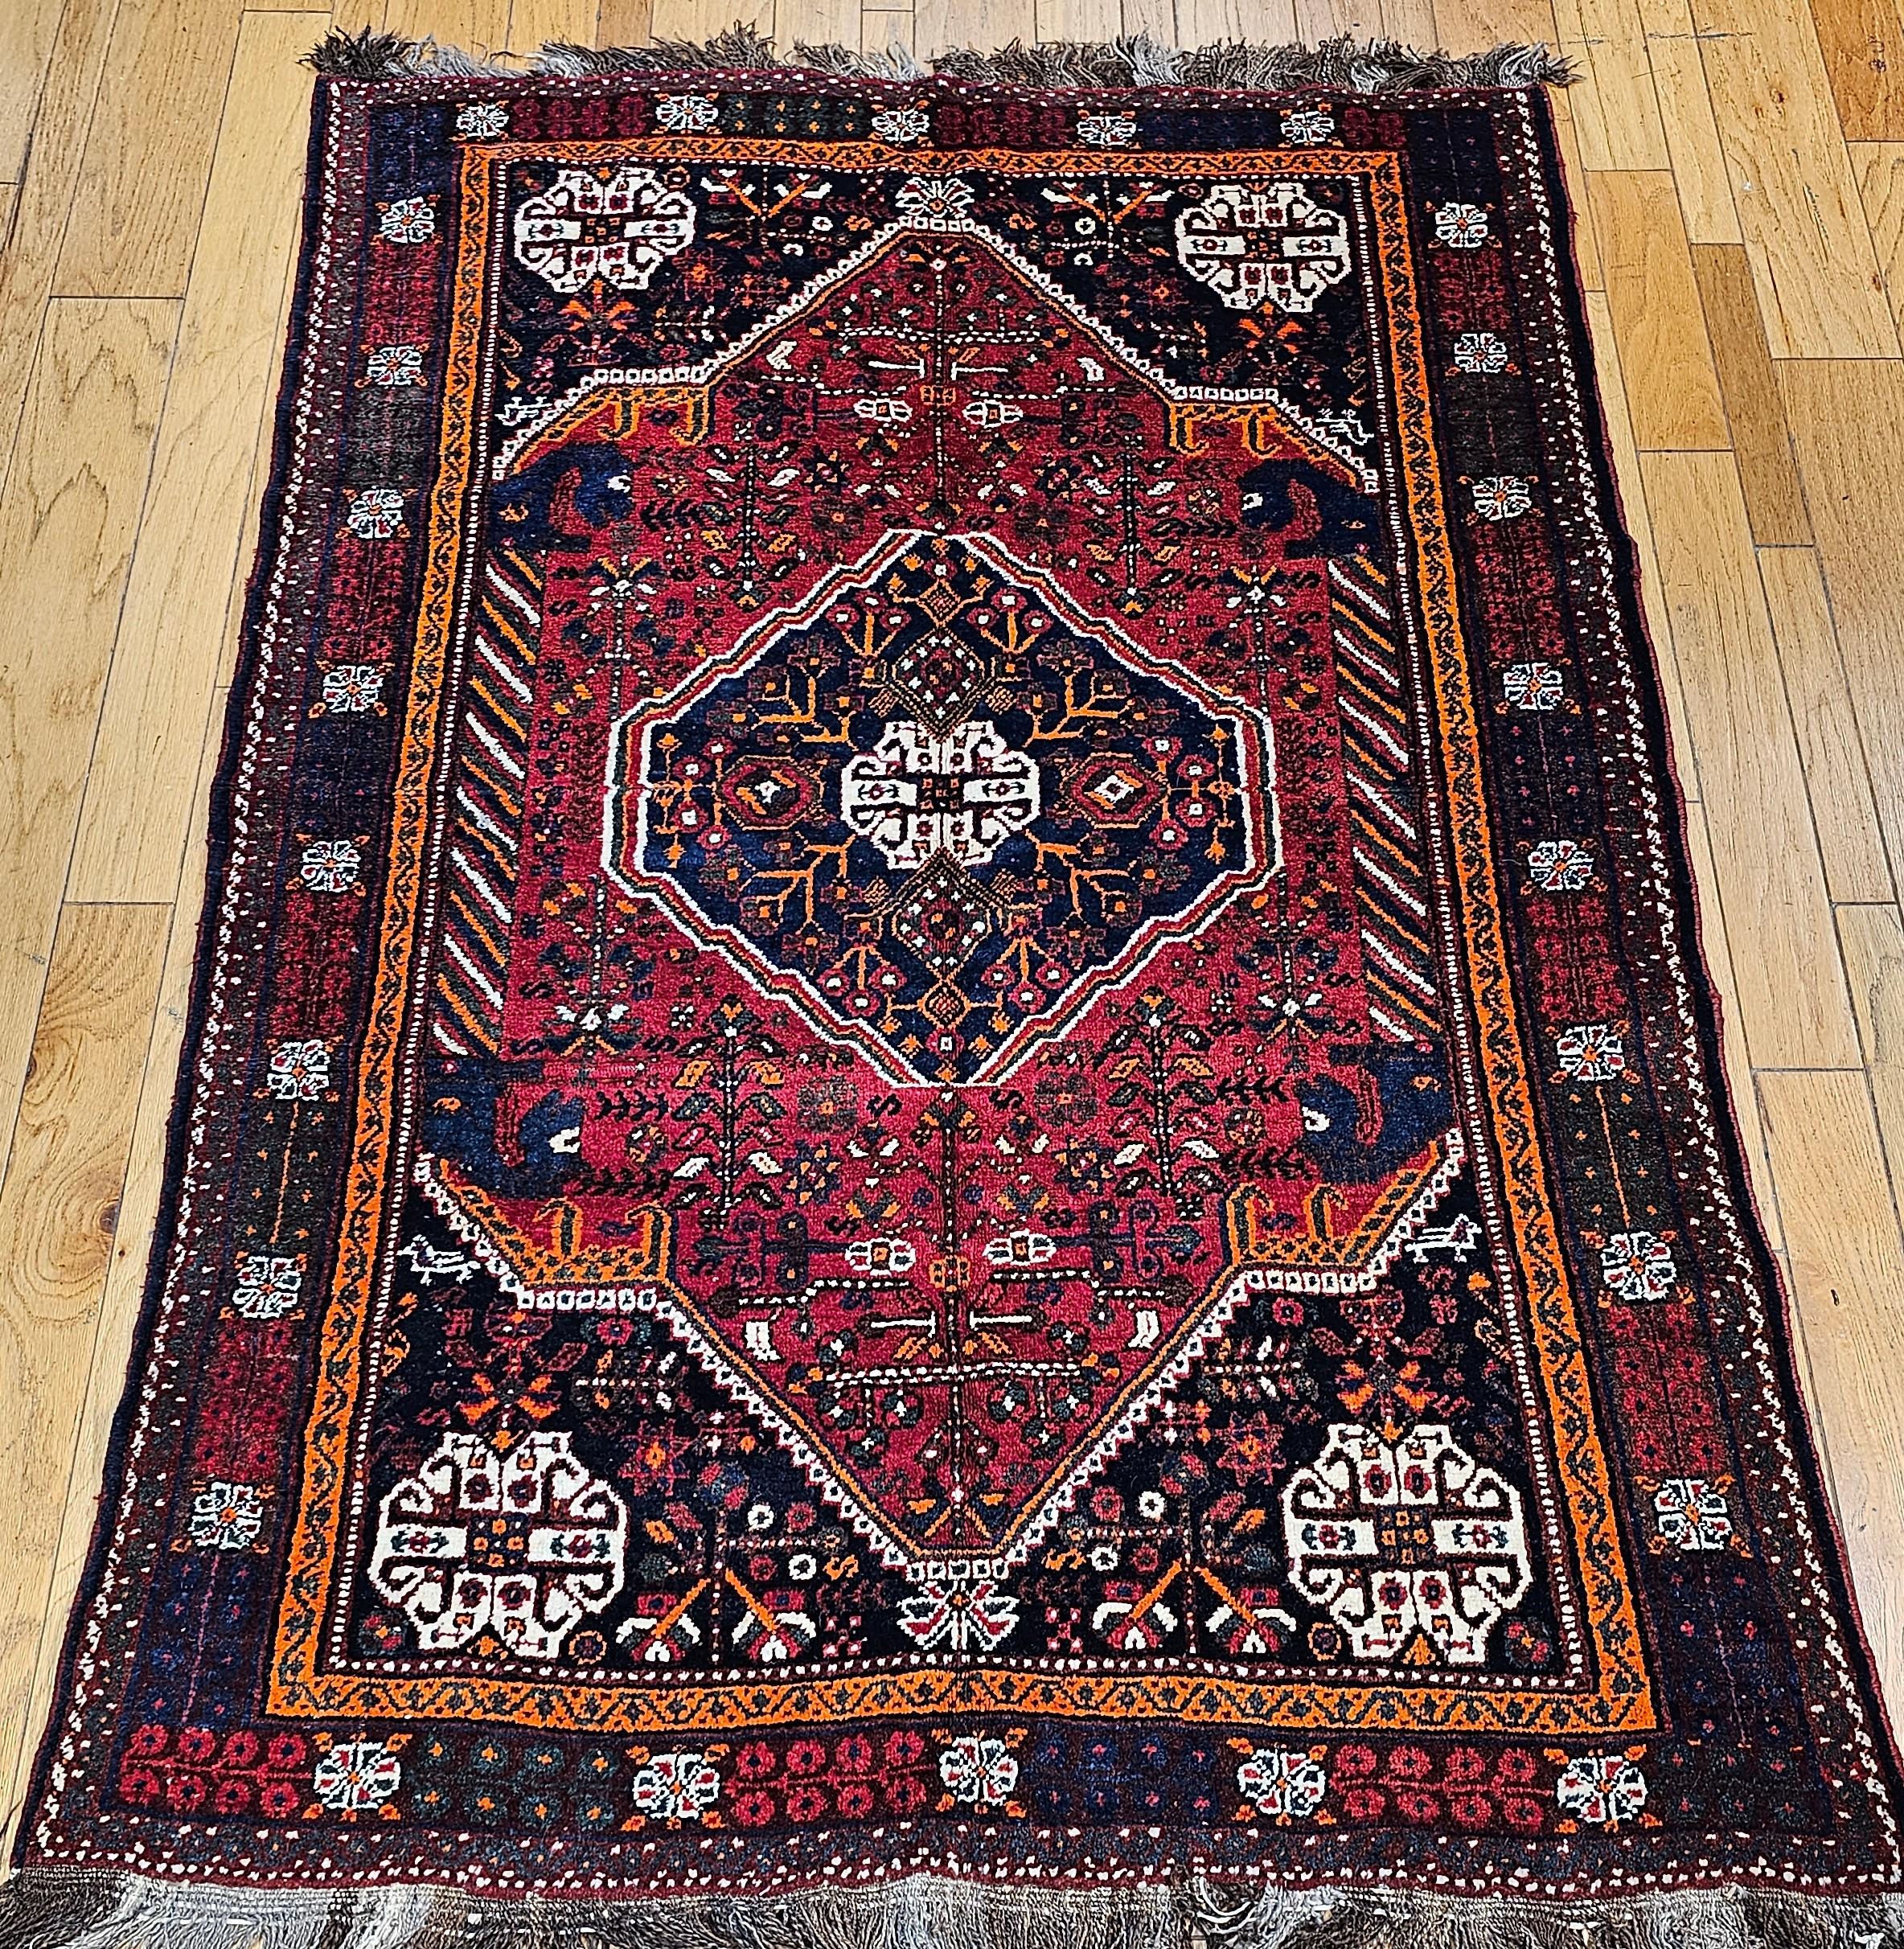 Vintage Persian Qashqai (Ghashghai) tapis tribal du sud-ouest de la Perse vers le milieu des années 1900.   Le tapis Qashqai présente un format de design tribal traditionnel qui comprend un médaillon central et quatre petits médaillons dans les